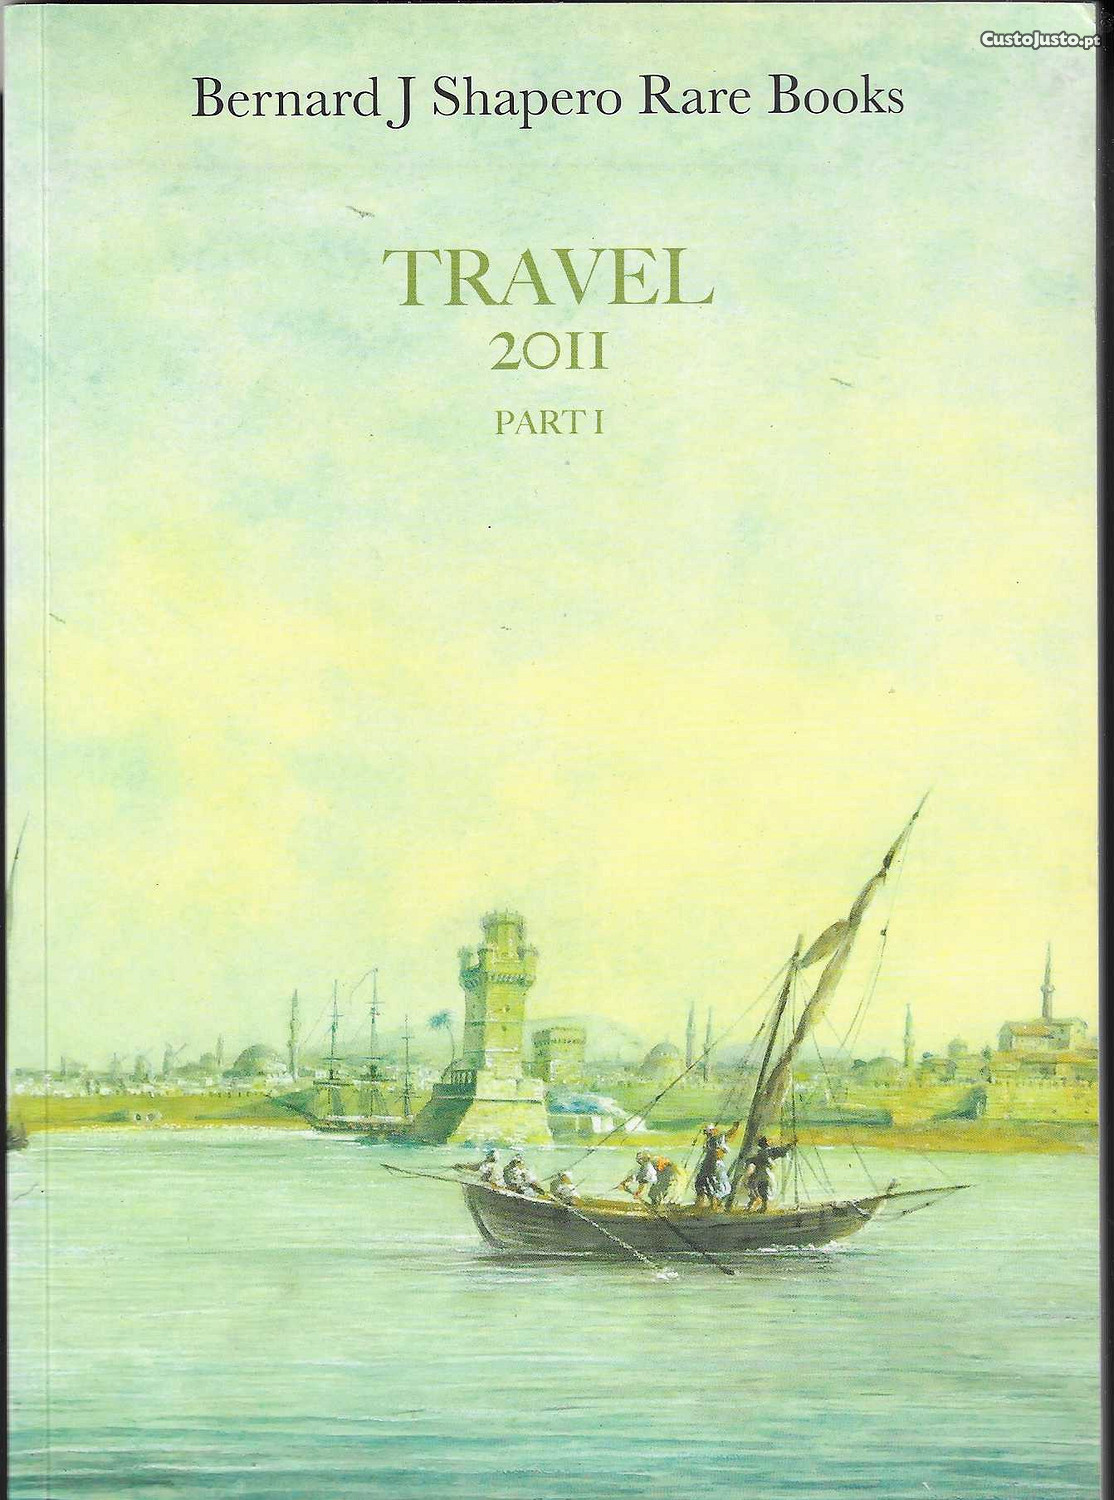 Travel, Part I. Bernard J. Shapero Rare Books. 2011.